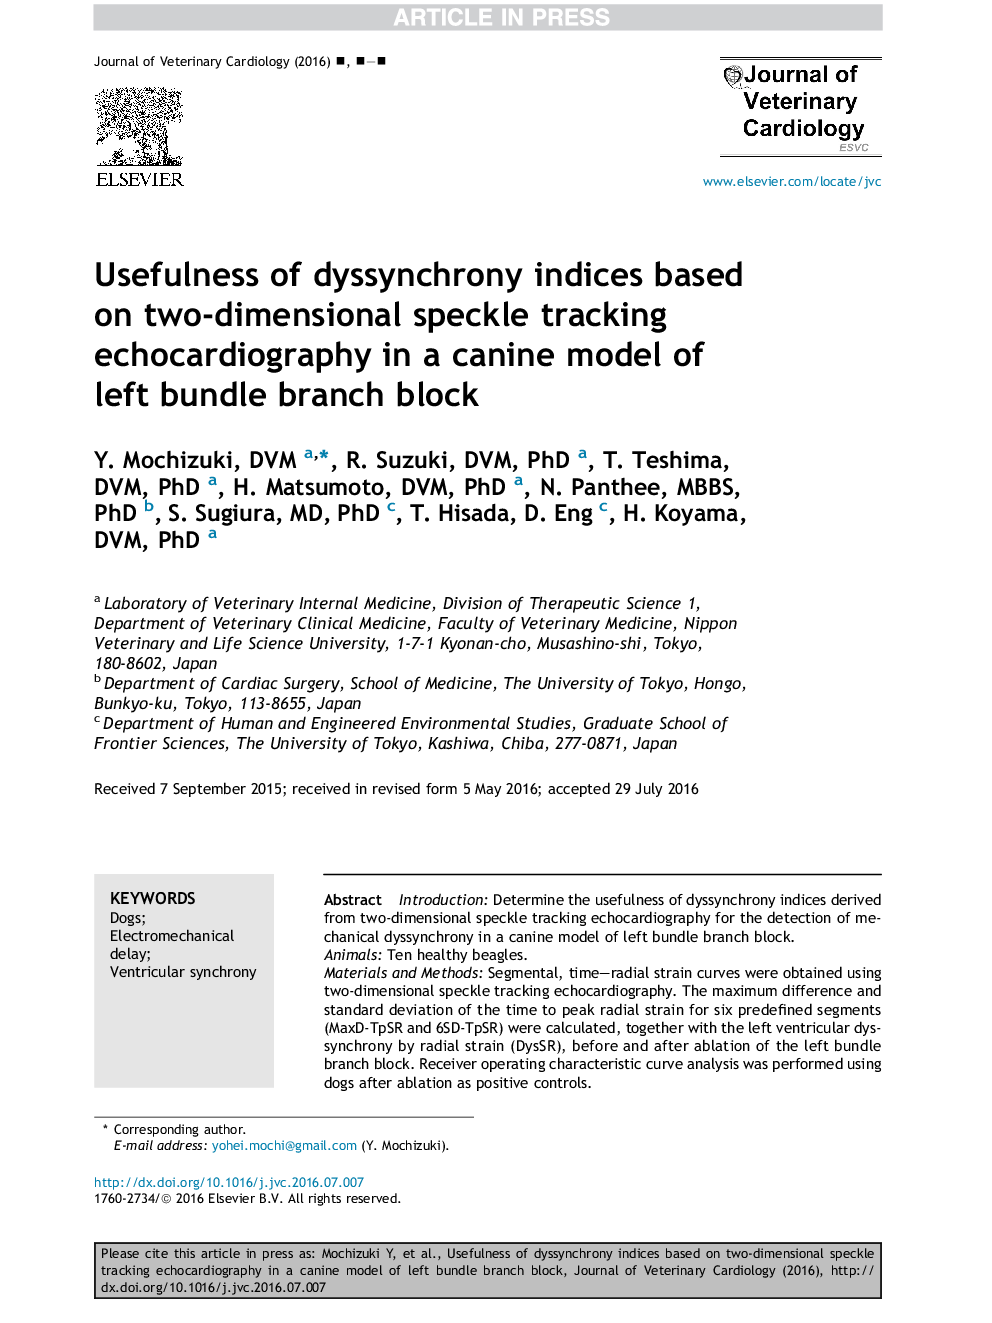 سودمندی شاخص های تن سنجی براساس اکوکاردیوگرافی ردیابی دوبعدی در یک مدل سگ بلوک شاخه ای سمت چپ 